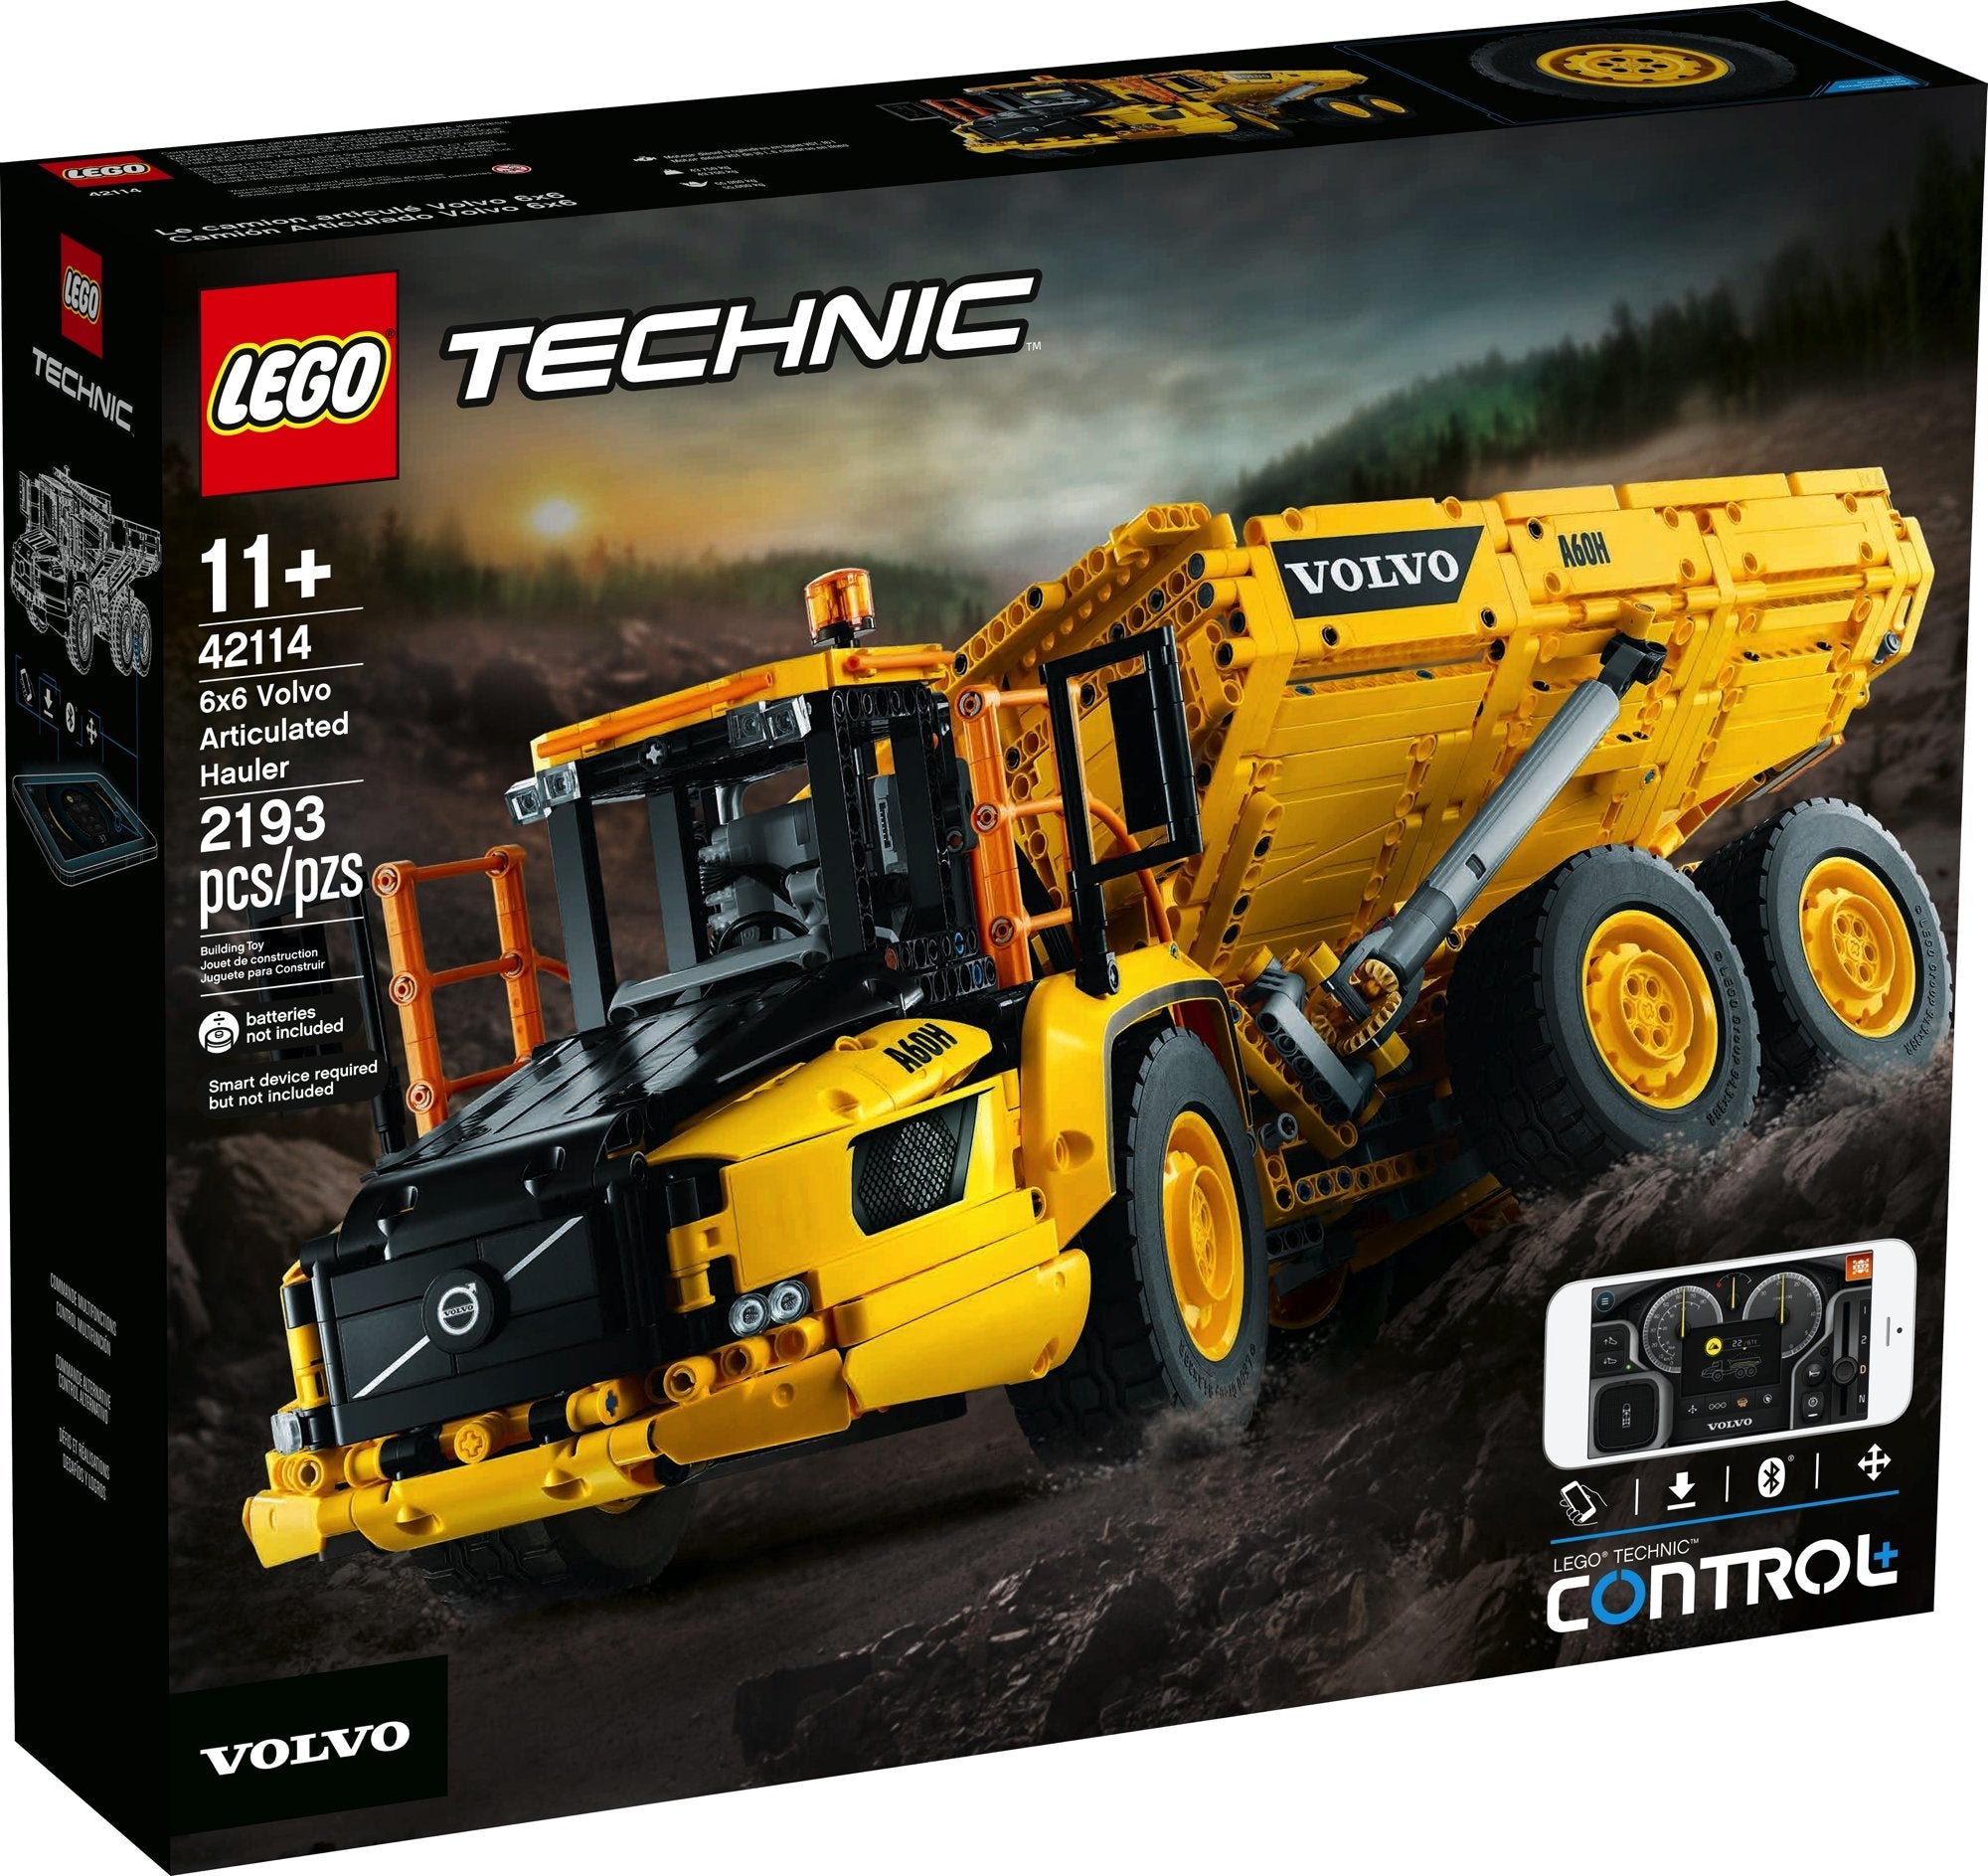 LEGO Technic Knickgelenkter Volvo-Dumper (6x6) (42114) - im GOLDSTIEN.SHOP verfügbar mit Gratisversand ab Schweizer Lager! (5702016617528)